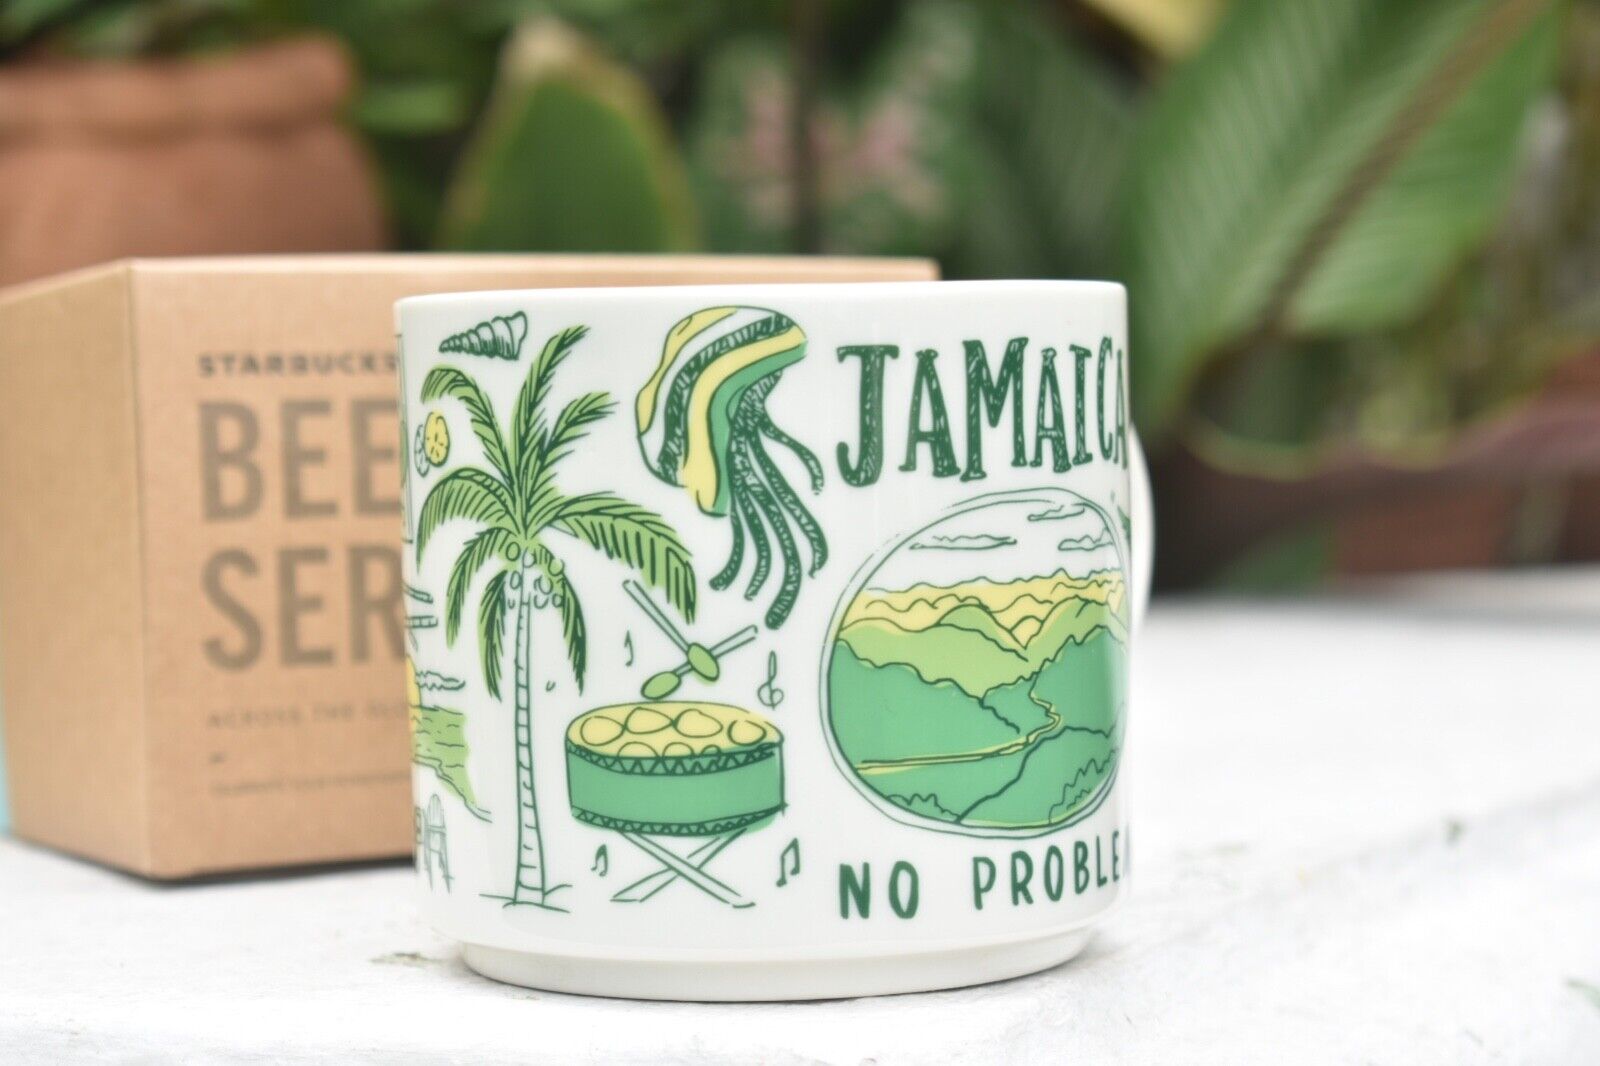 Starbucks Jamaica mug 14 oz been there